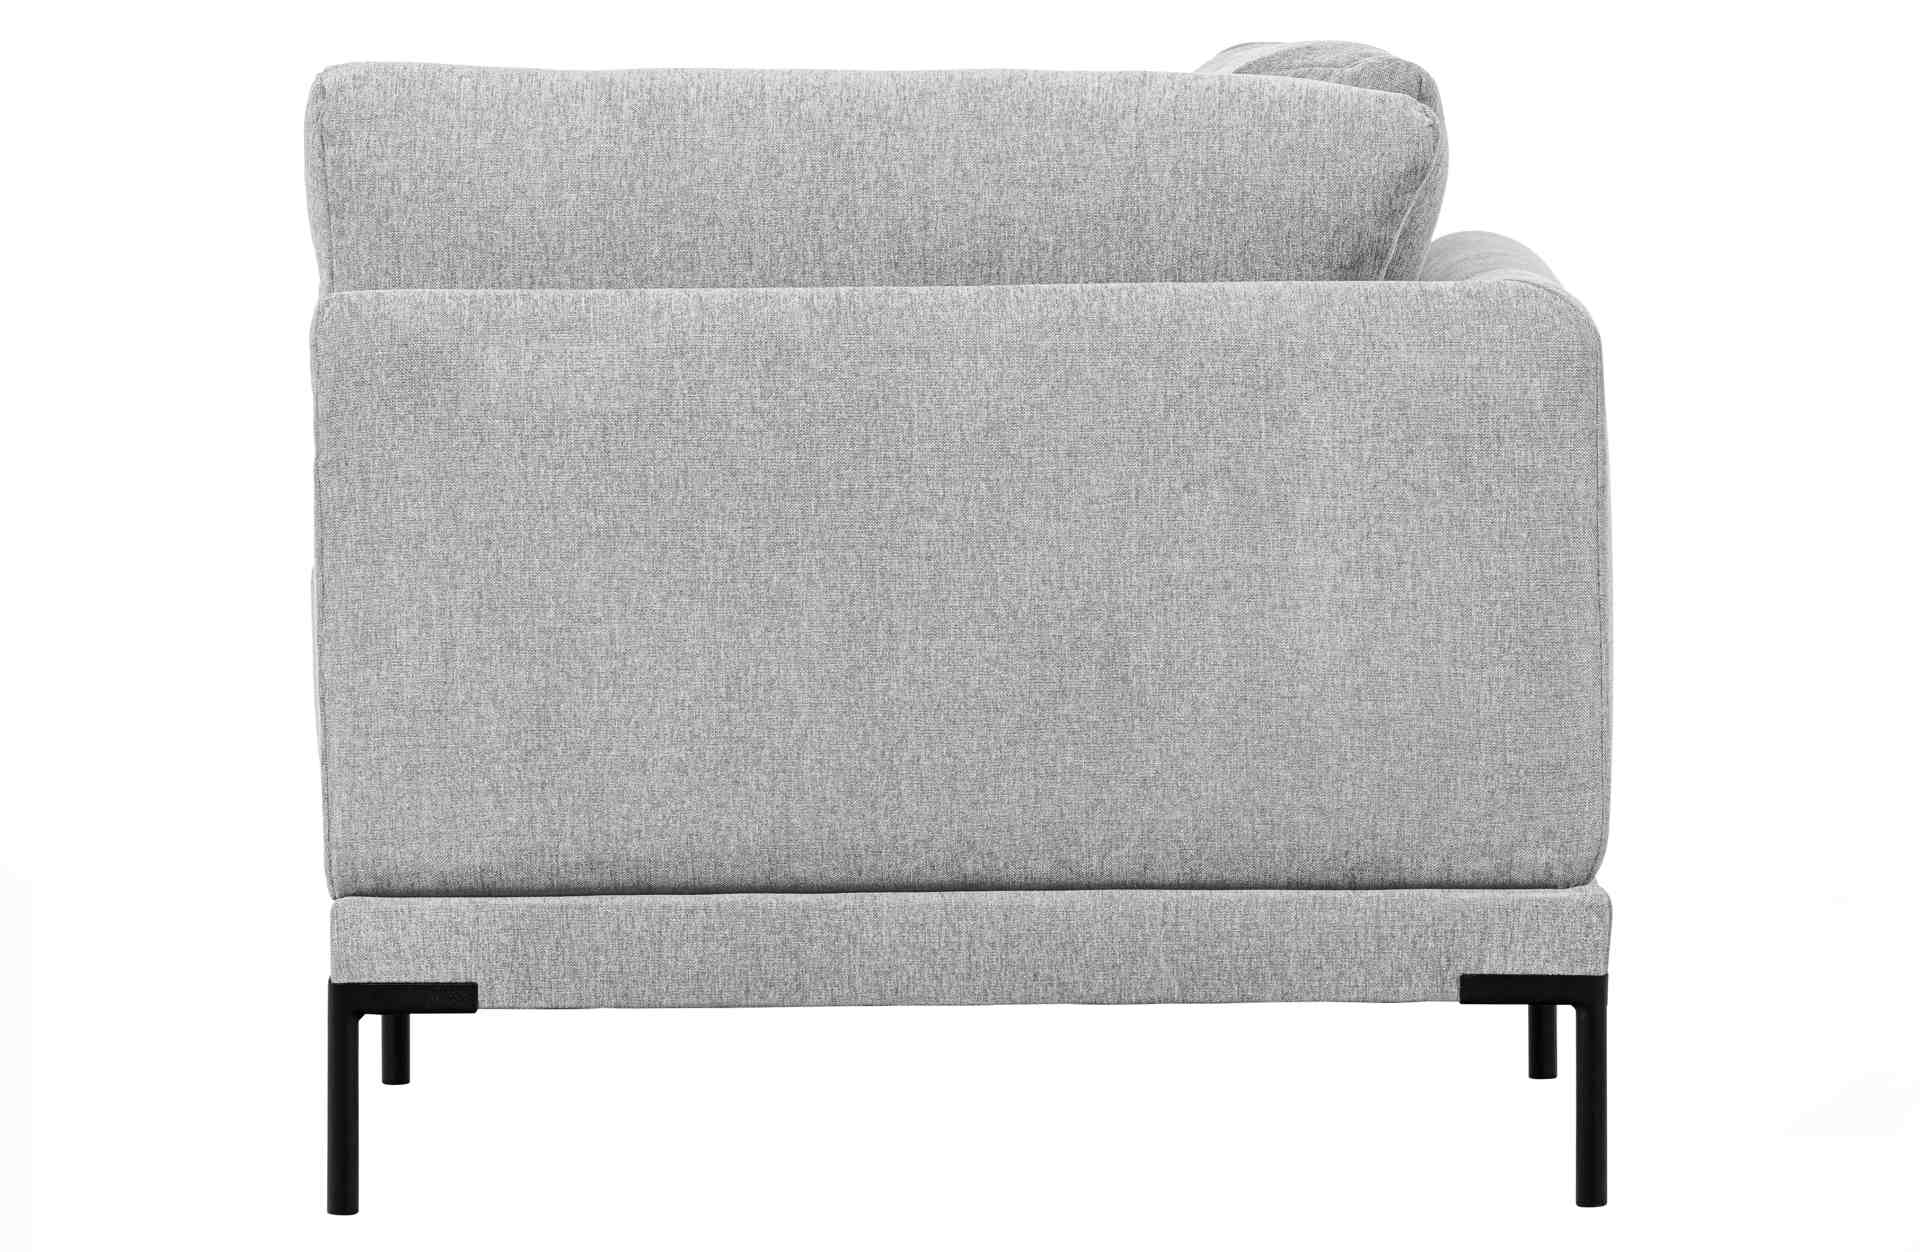 Das Modulsofa Couple Lounge überzeugt mit seinem modernen Design. Das Eck-Element wurde aus Melange Stoff gefertigt, welcher einen einen hellgrauen Farbton besitzen. Das Gestell ist aus Metall und hat eine schwarze Farbe. Das Element hat eine Länge von 10